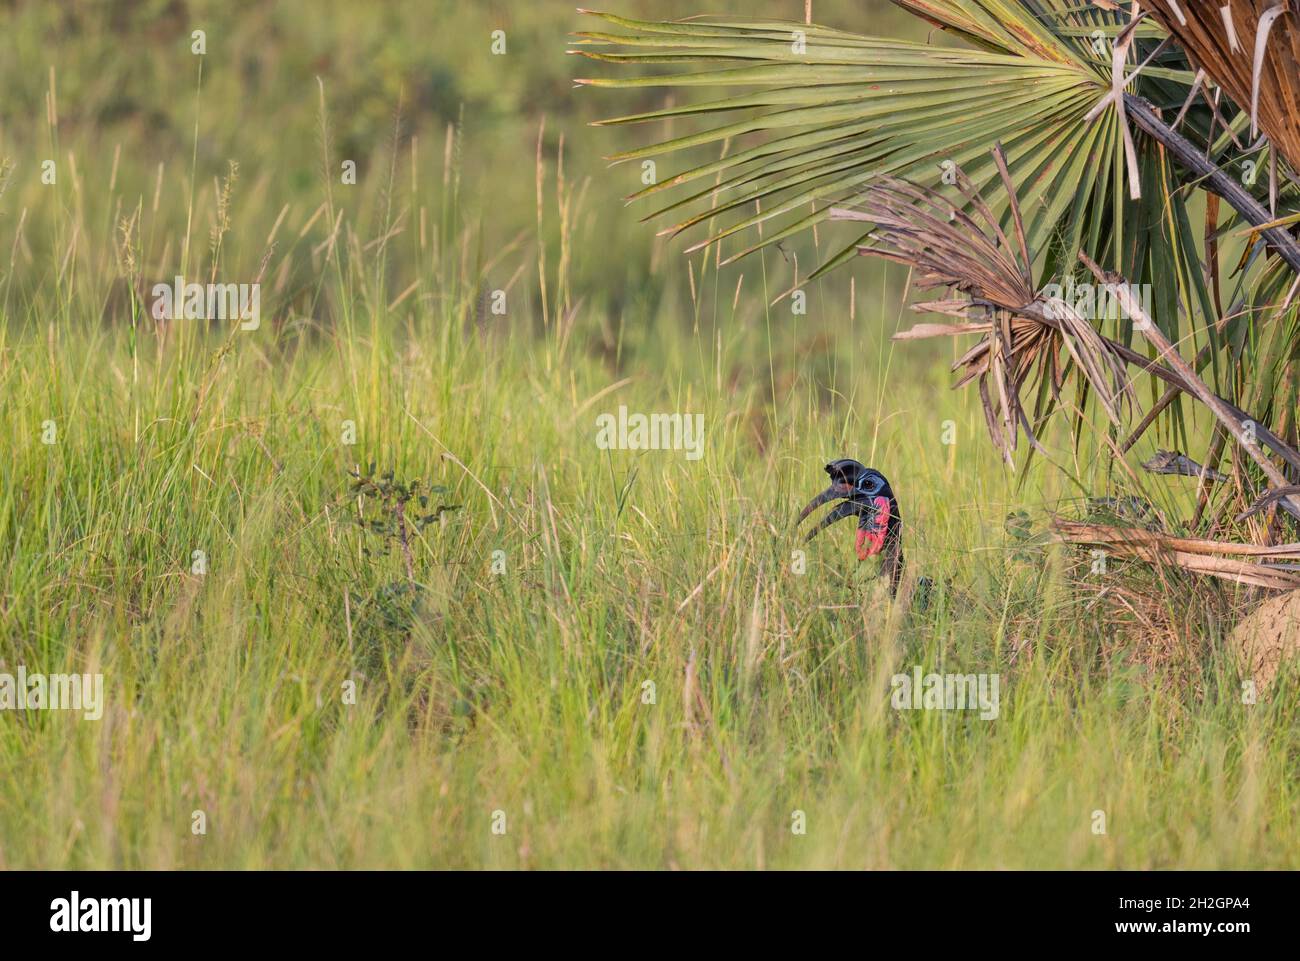 Abessinischer Hornbill - Bucorvus abyssinicus, spezieller großer Vogel aus afrikanischen Savannen, Murchison Falls, Uganda. Stockfoto